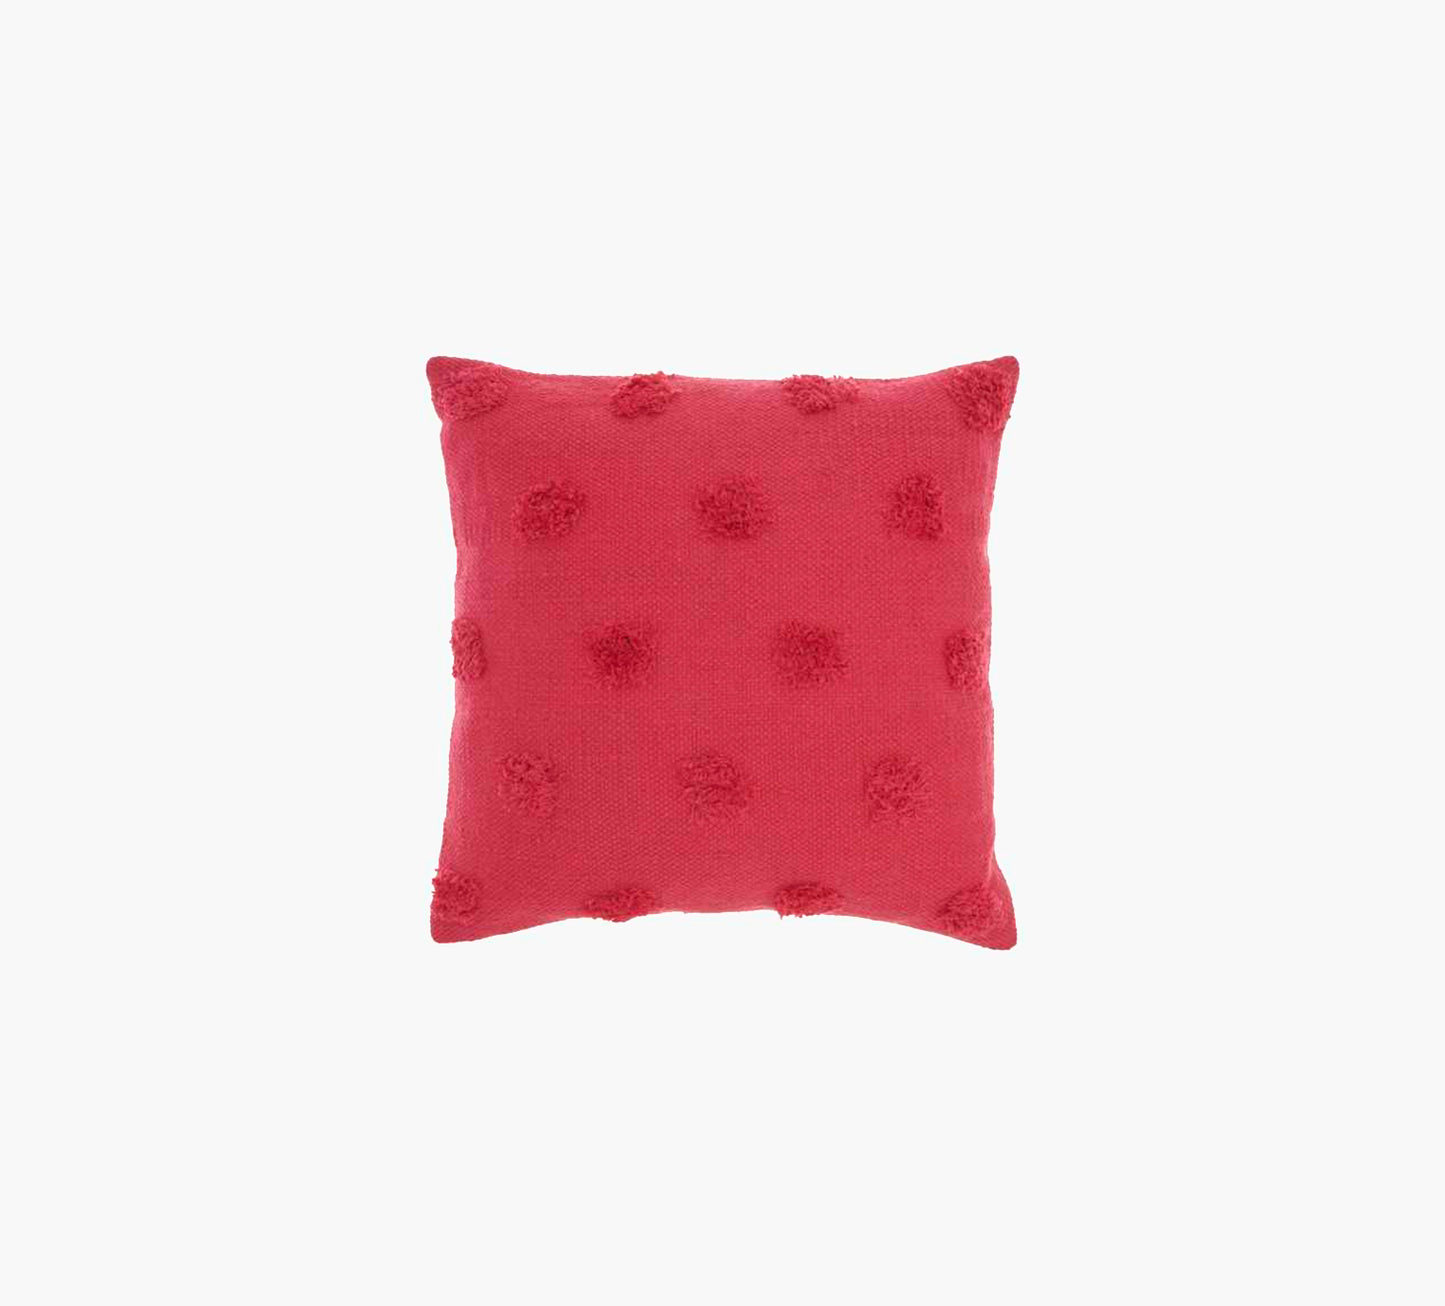 Hot Pink Dot Pillow 18 x 18